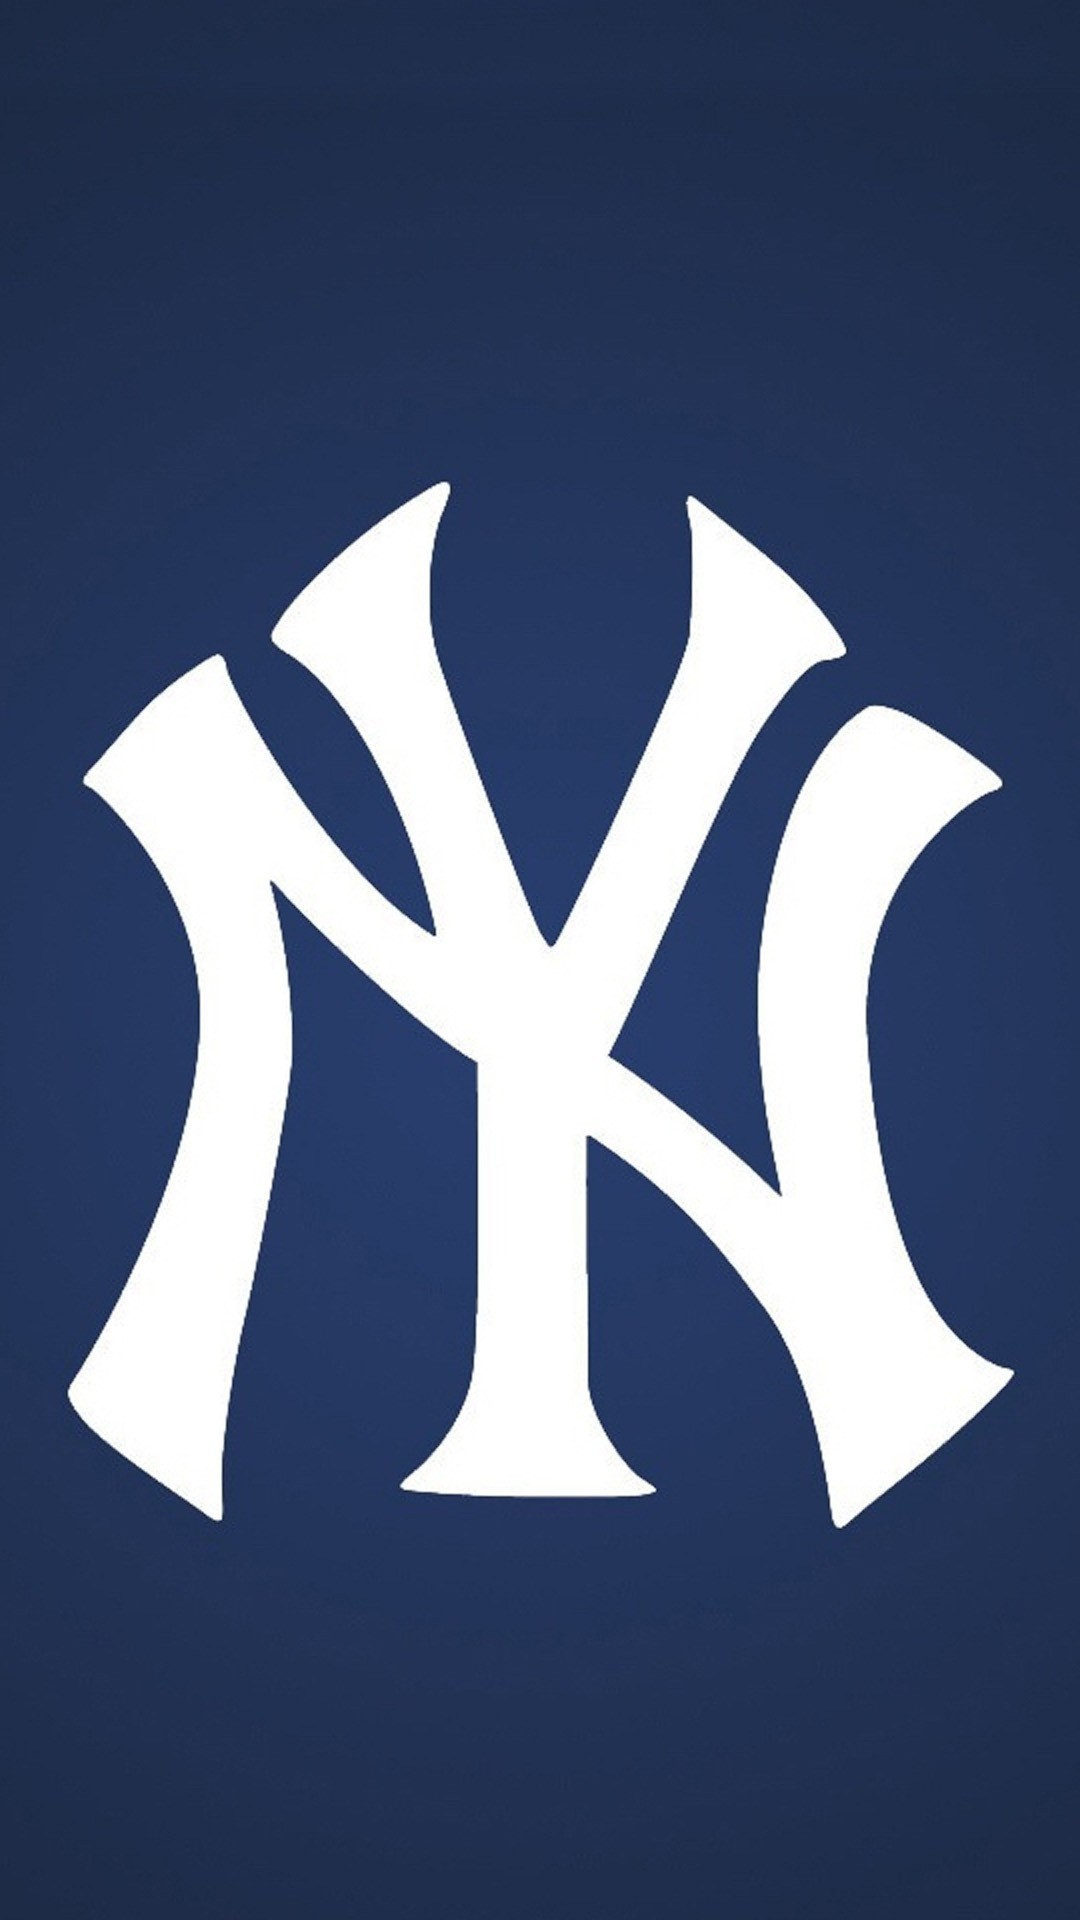 뉴욕 양키스 아이폰 배경 화면,폰트,강청색,상징,티셔츠,제도법